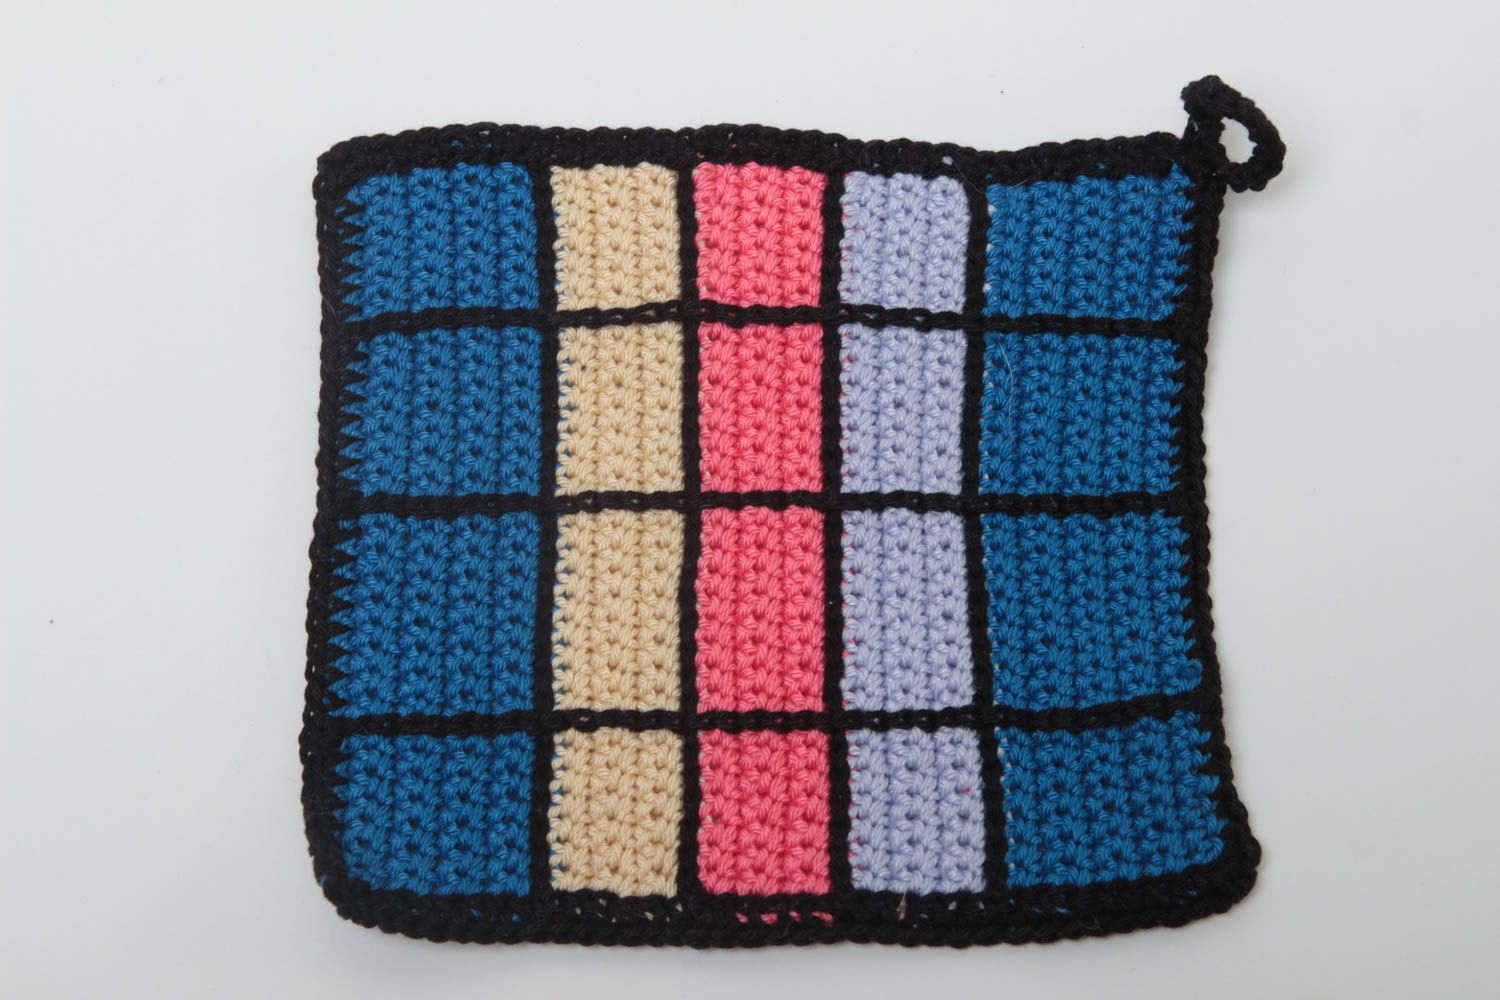 Unusual homemade pot holder handmade crochet potholder home goods gift ideas photo 2